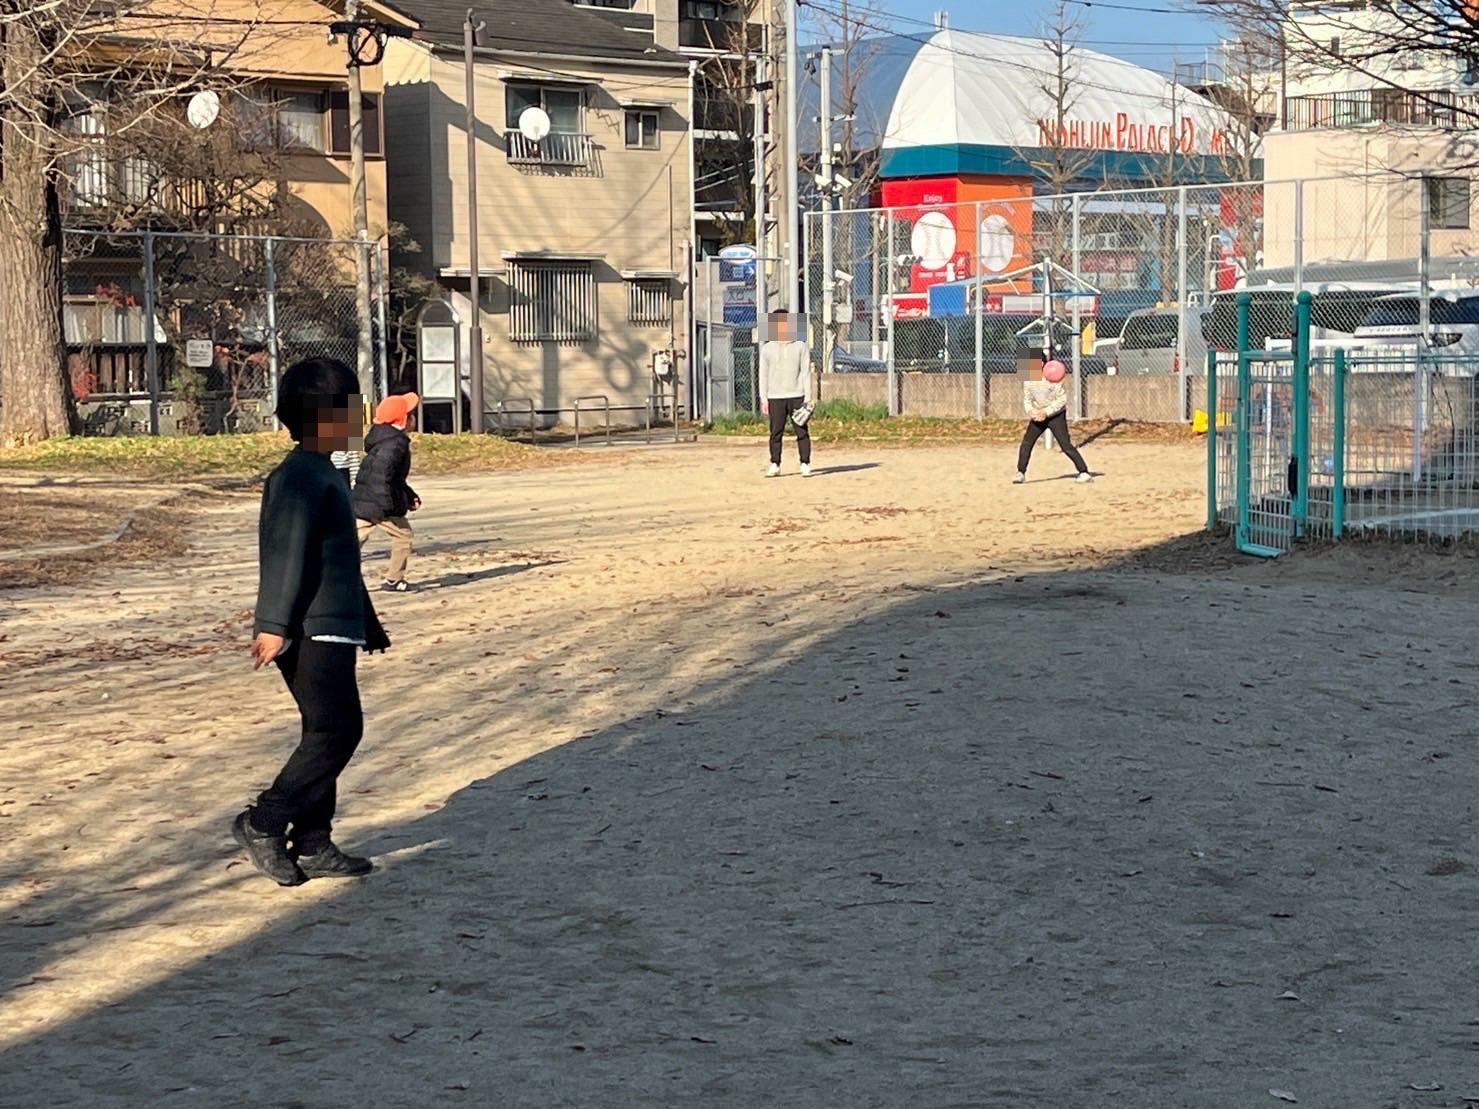 公園の真ん中には広いスペースがあります。天気が良い時は、子供達がボール遊びなどしていることもあります。